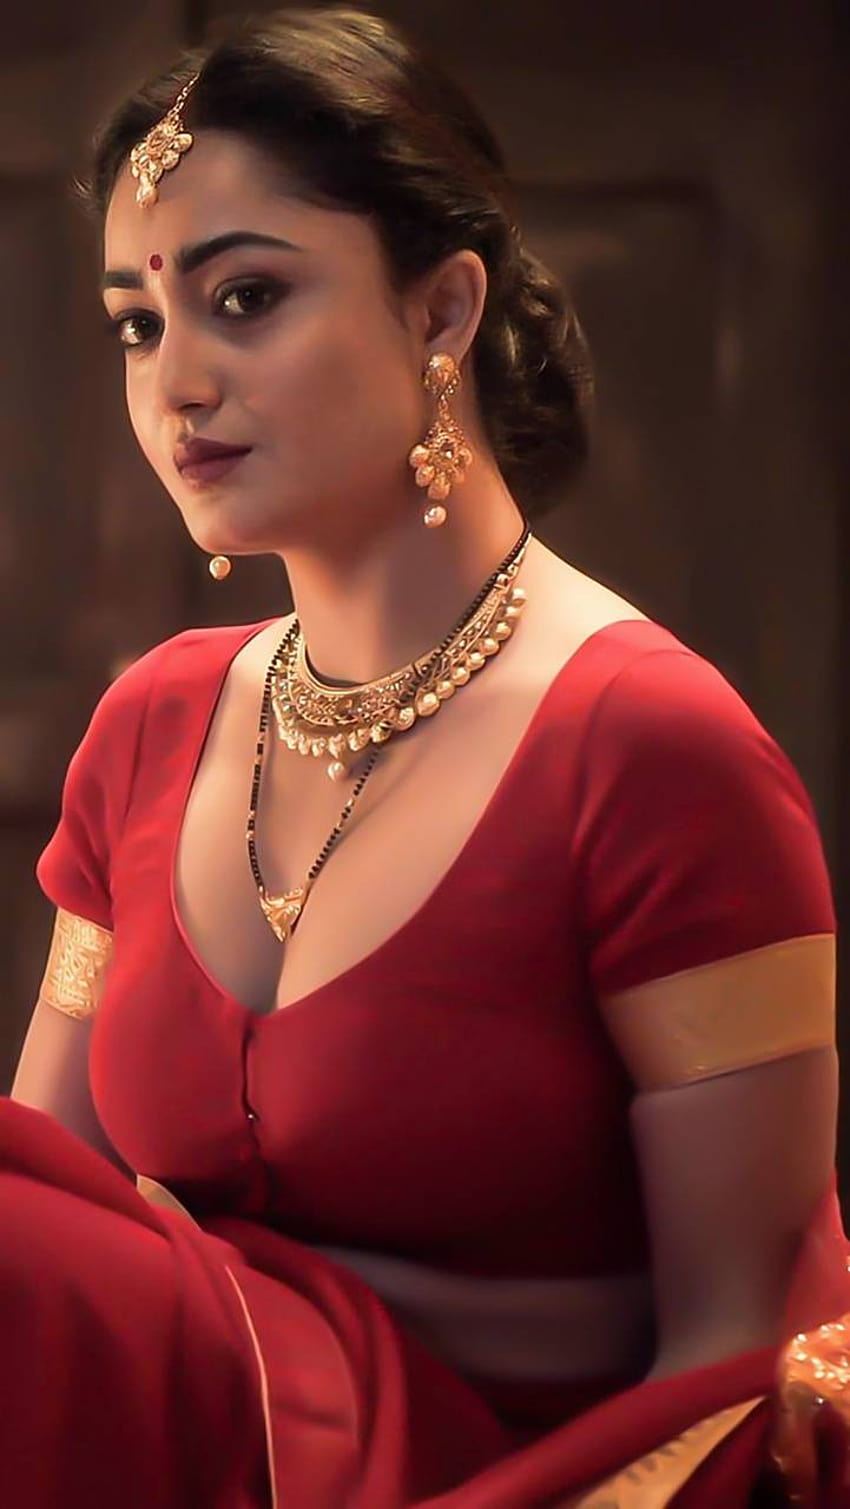 tridha choudhury caliente sari móvil, bella rolland fondo de pantalla del teléfono